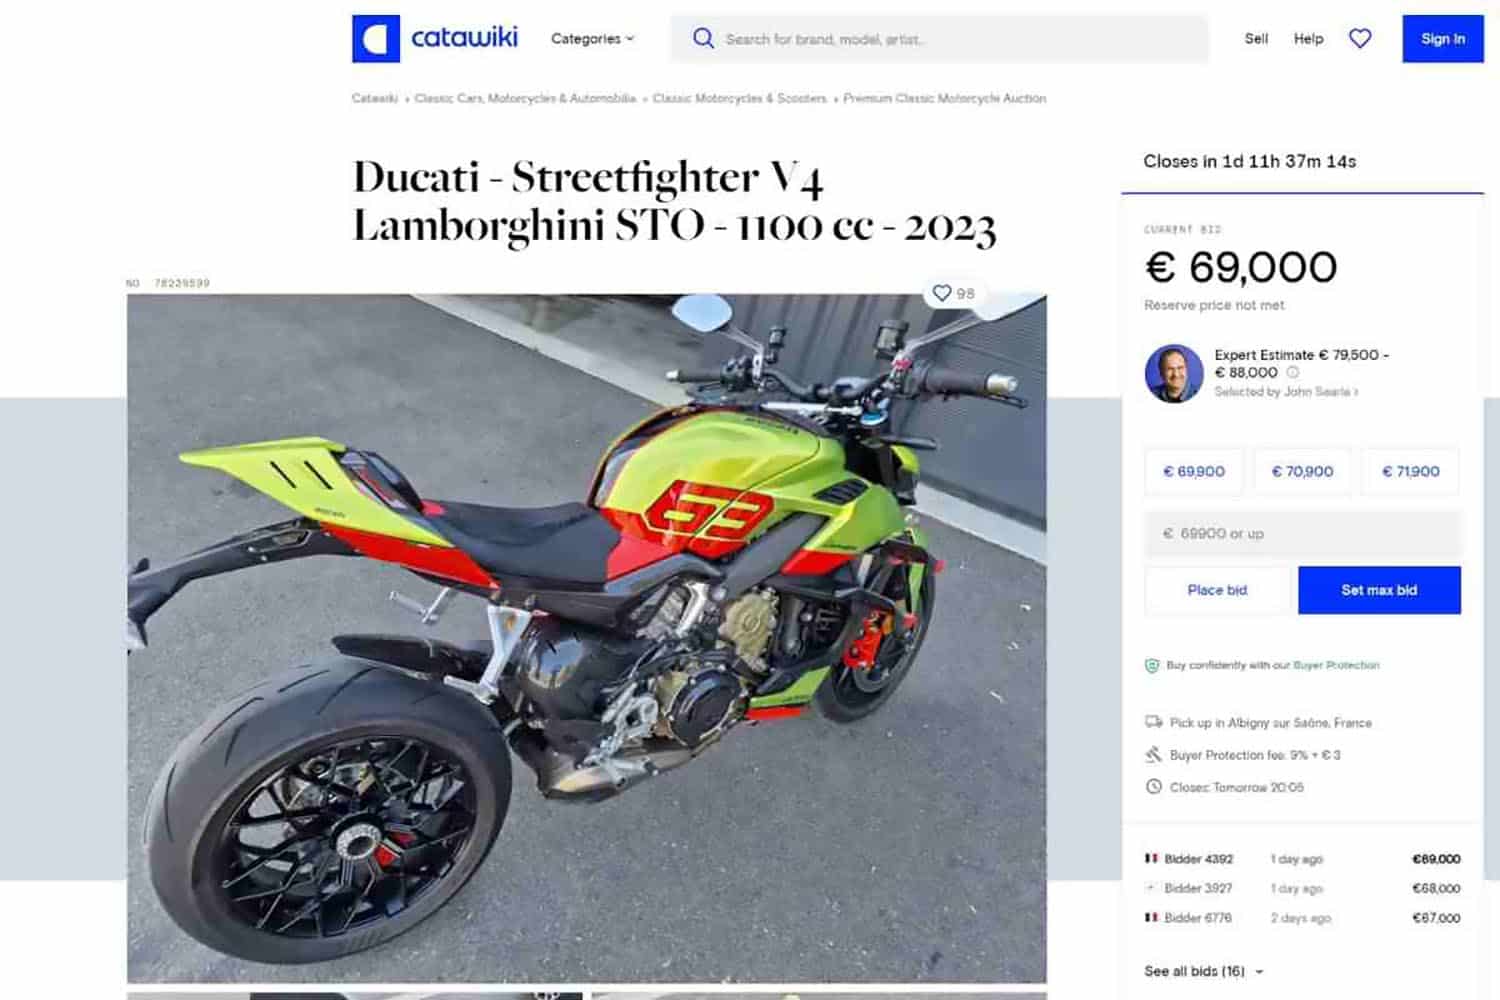 Esta moto ha rozado los 90.000 € de precio final